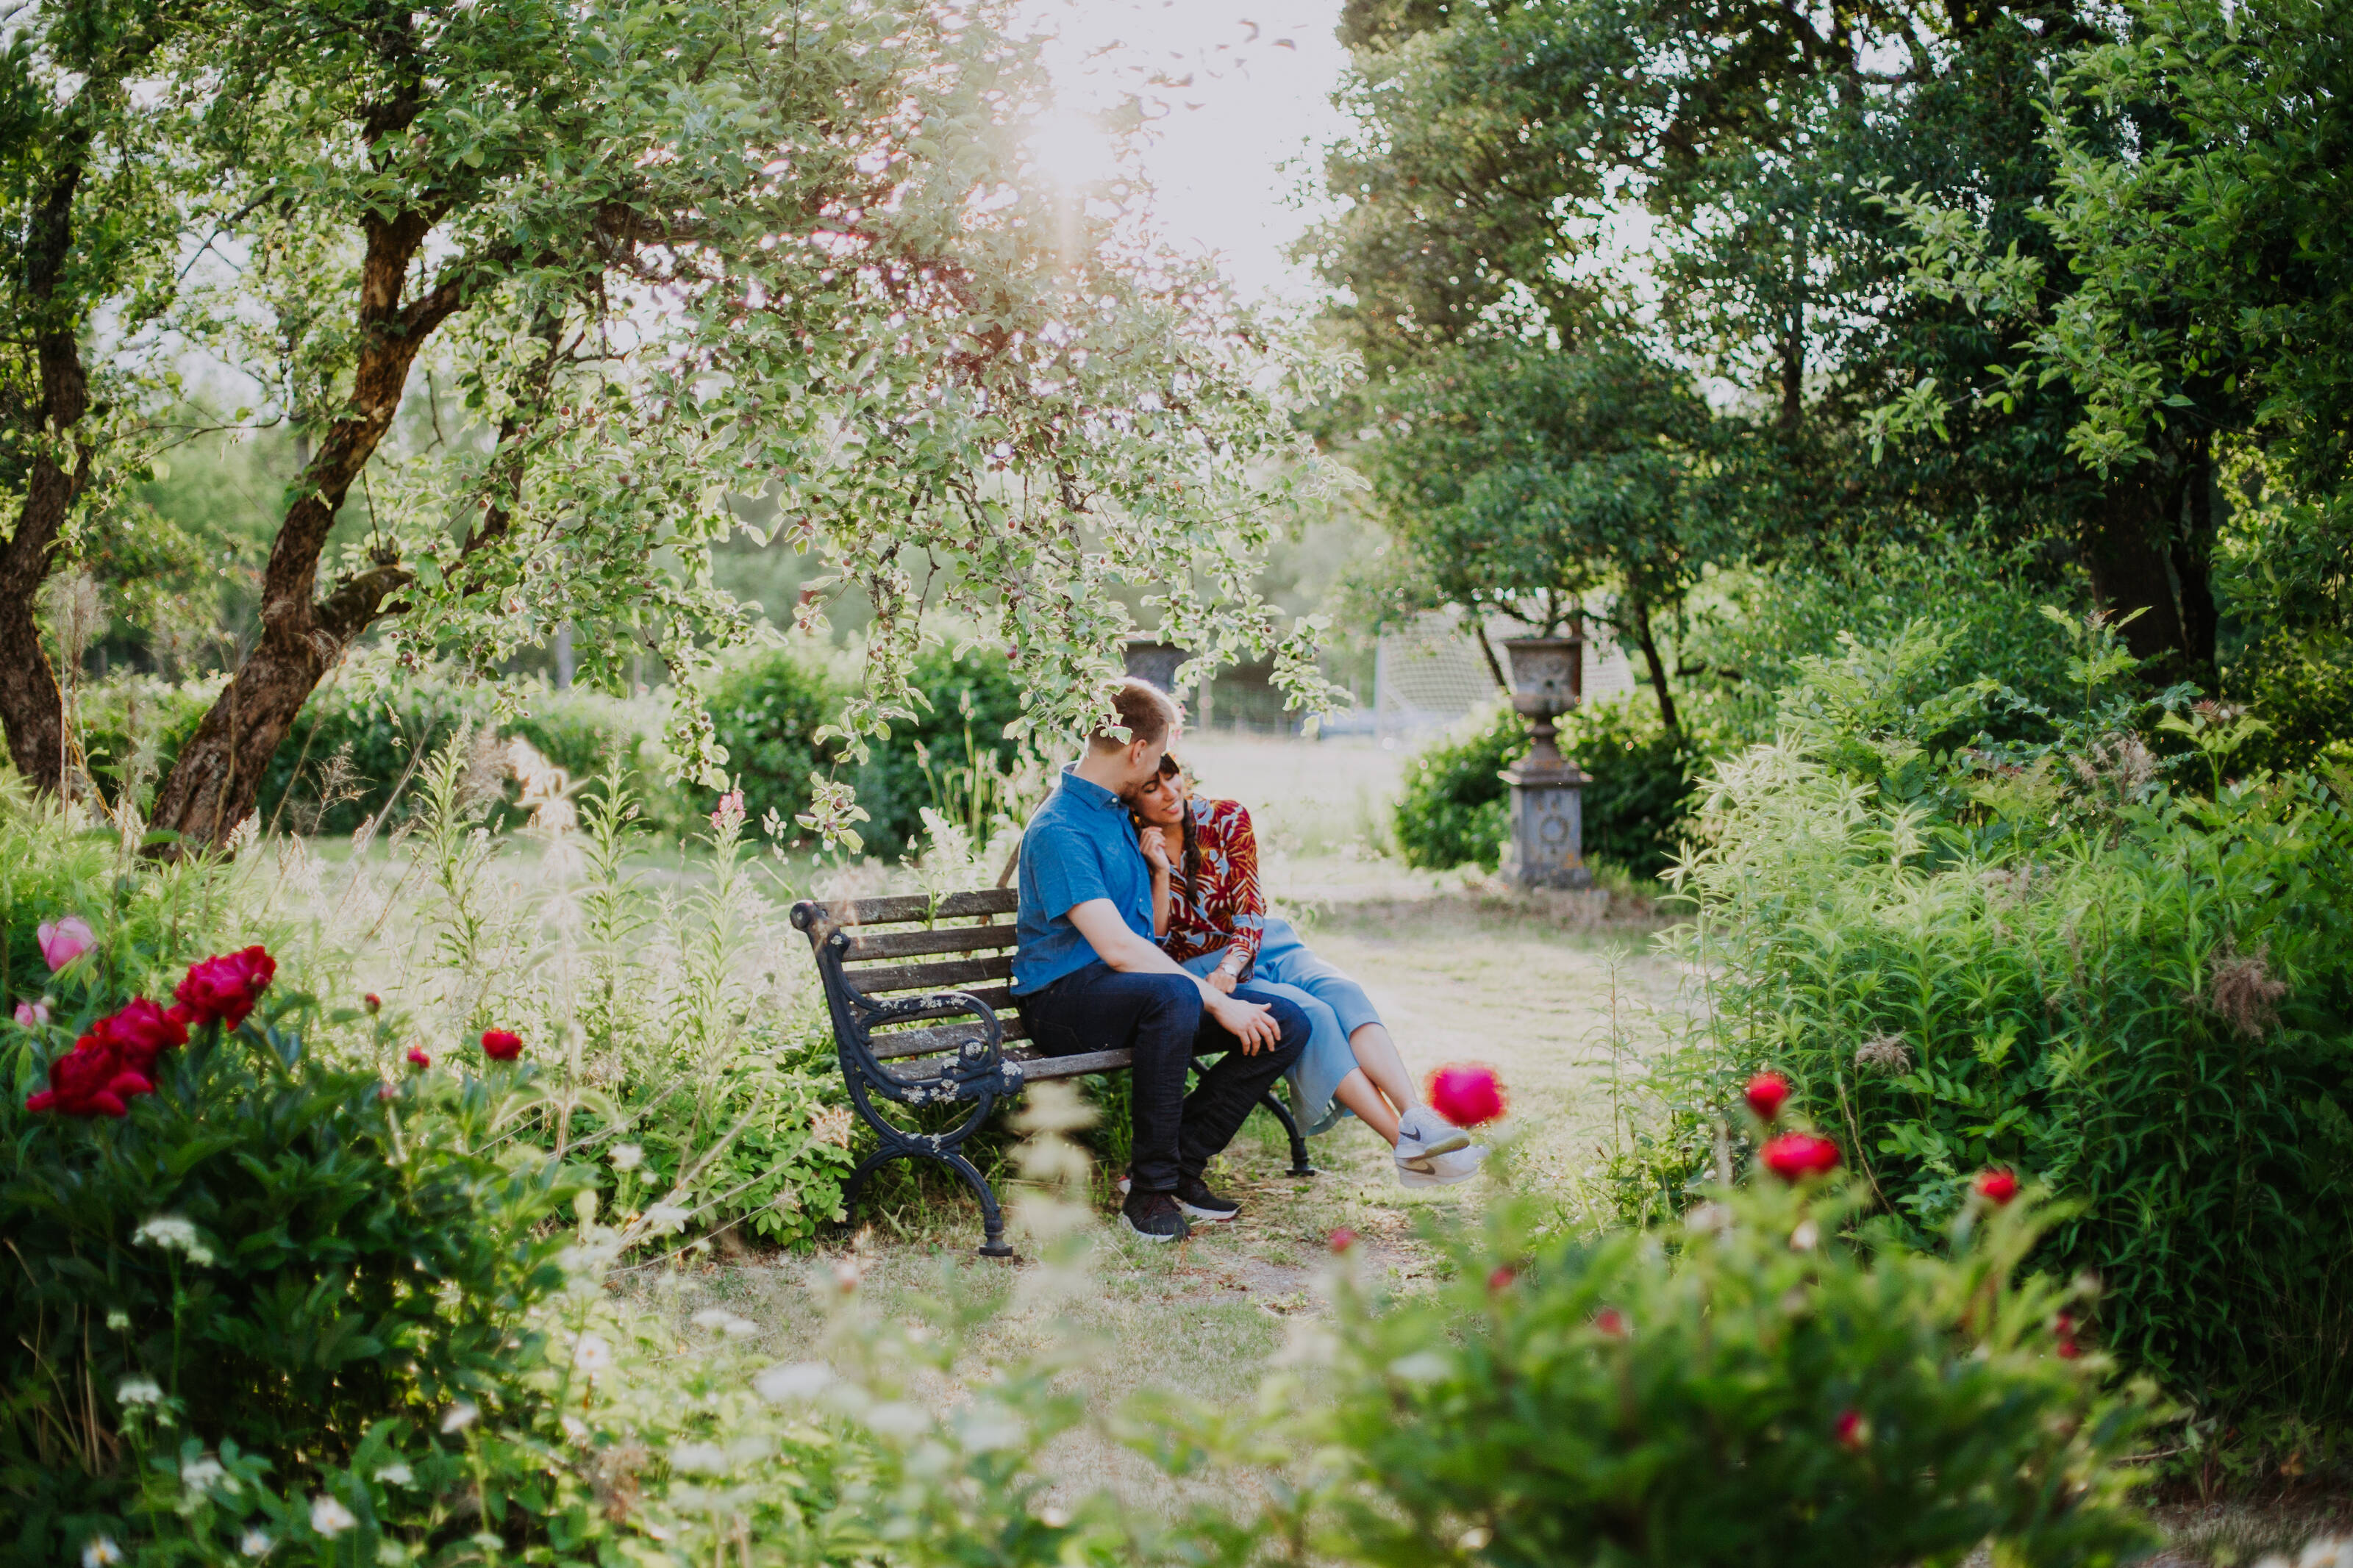 a couple enjoying their time in a public garden